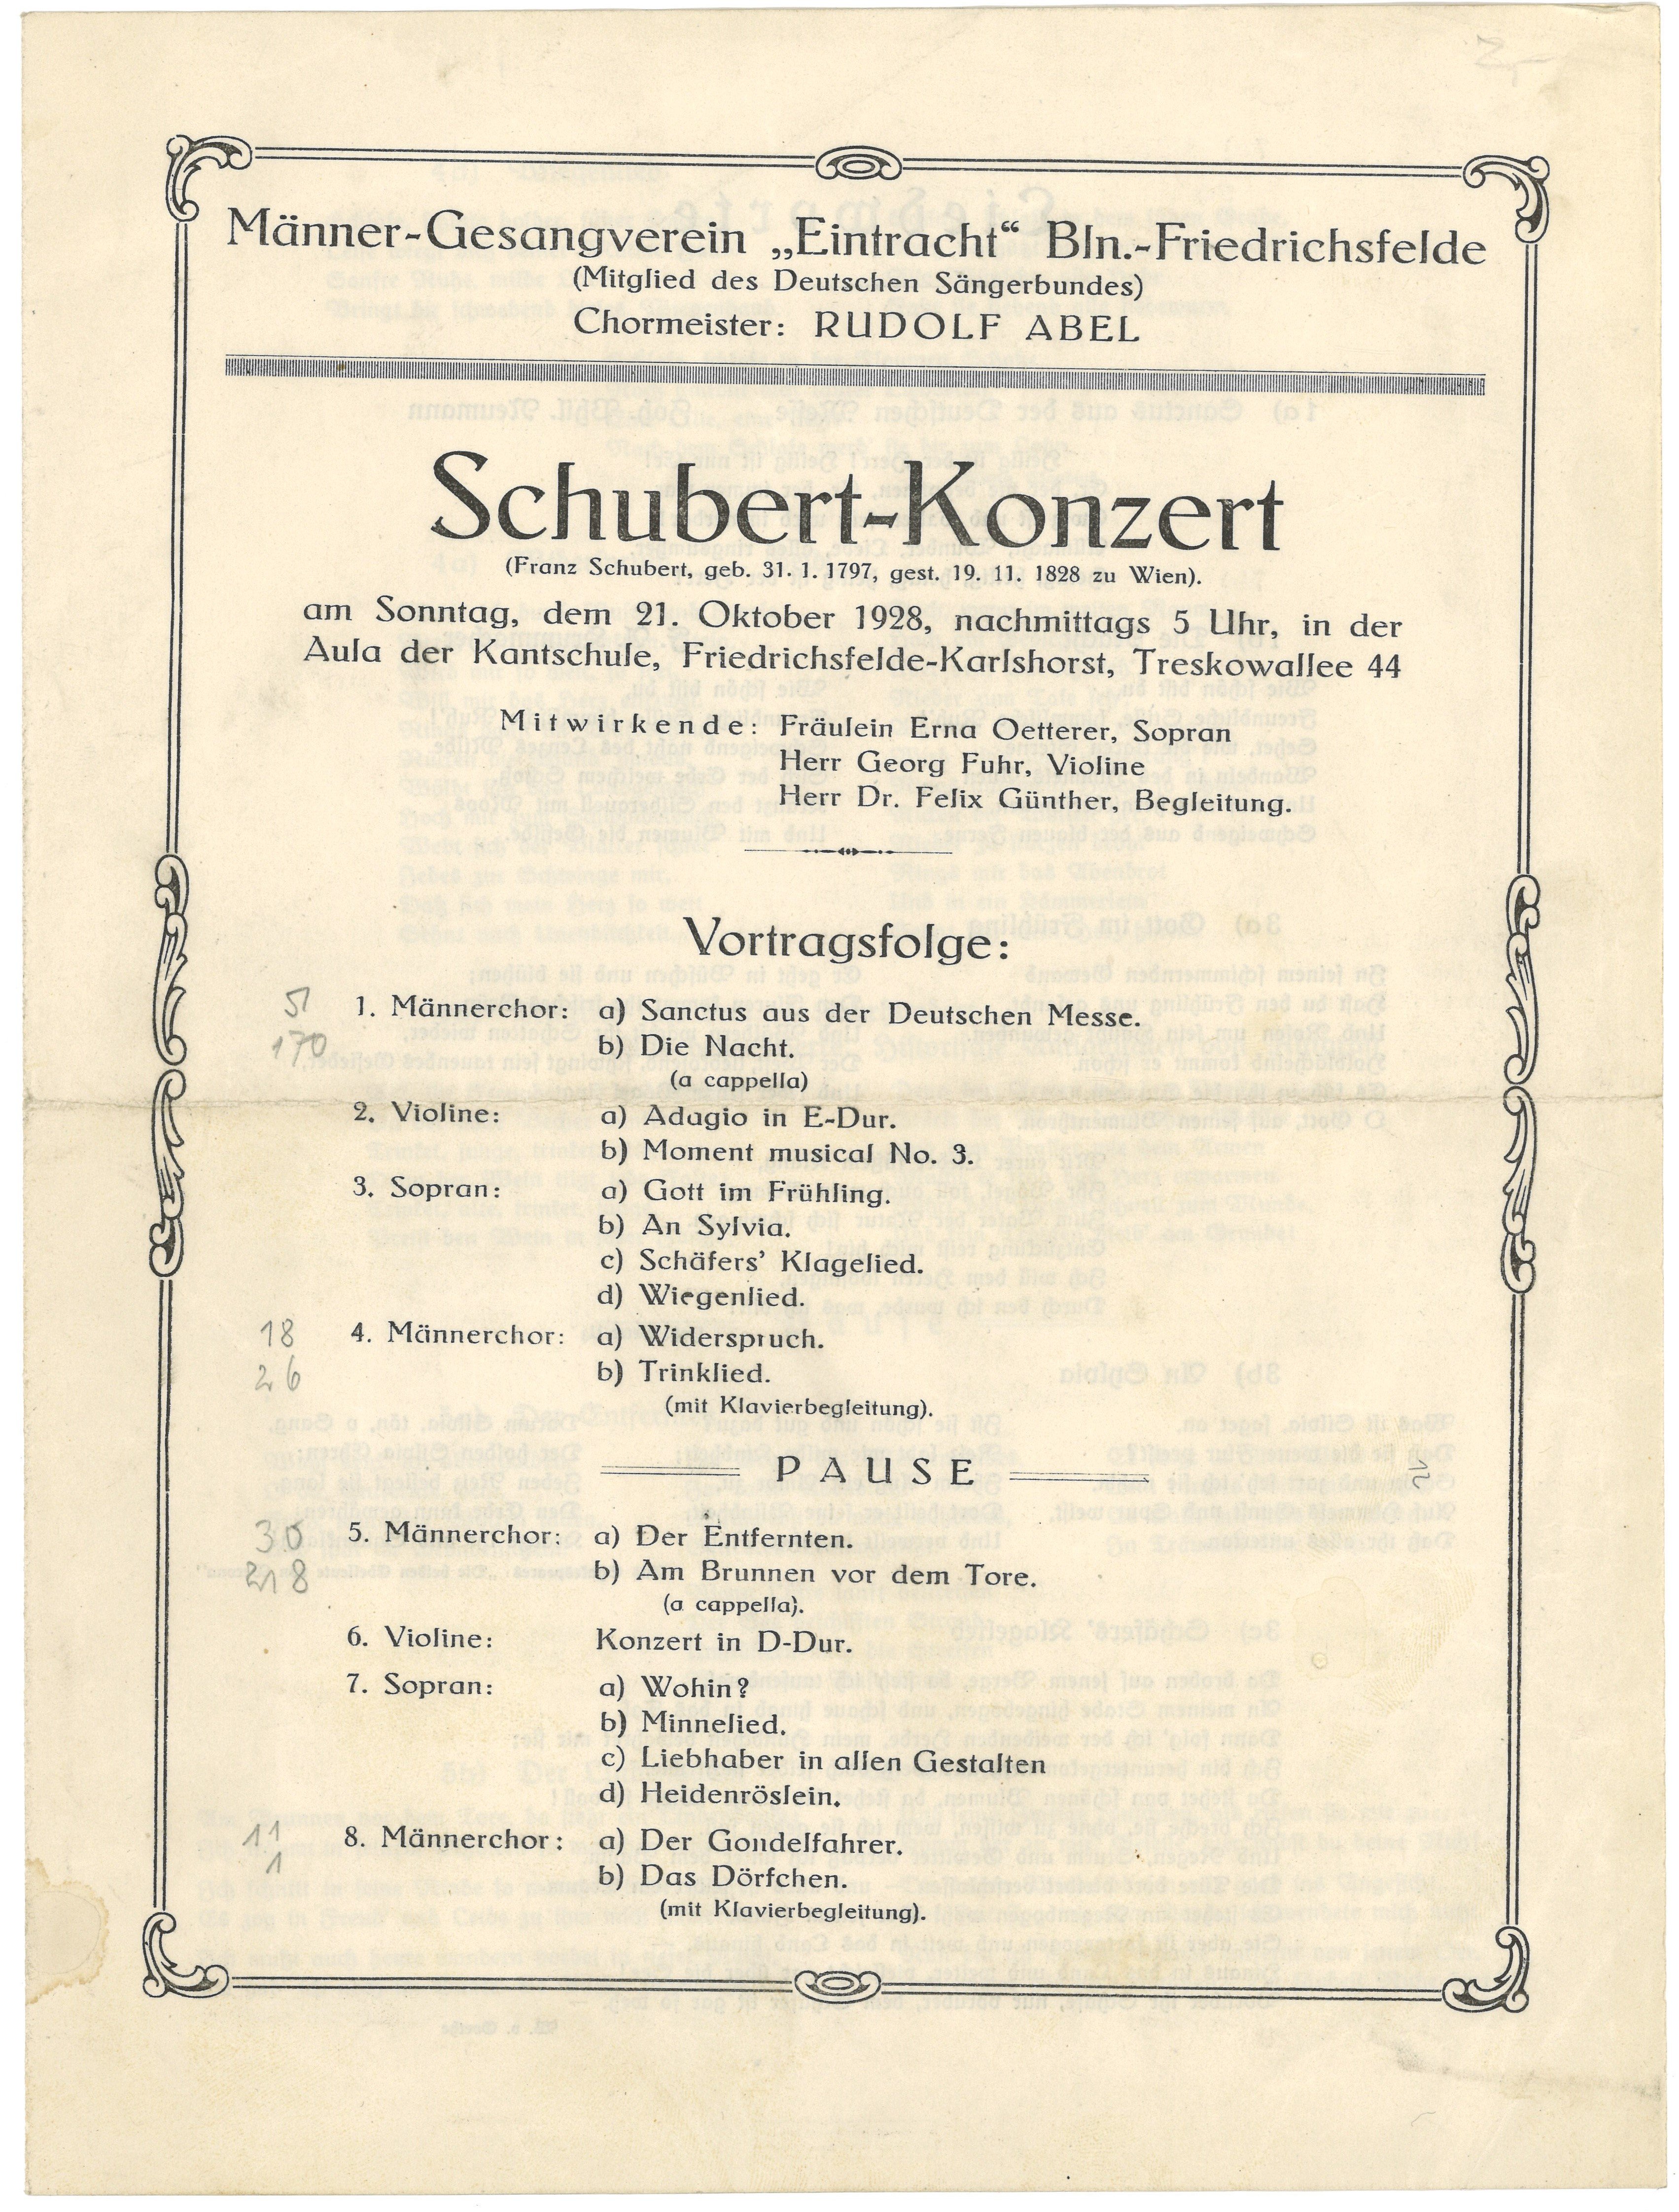 Programm zum Schubert-Konzert des Männer-Gesangvereins "Eintracht" Berlin-Friedrichsfelde in der Kantschule in Karlshorst am 21. Oktober 1928 (Landesgeschichtliche Vereinigung für die Mark Brandenburg e.V., Archiv CC BY)